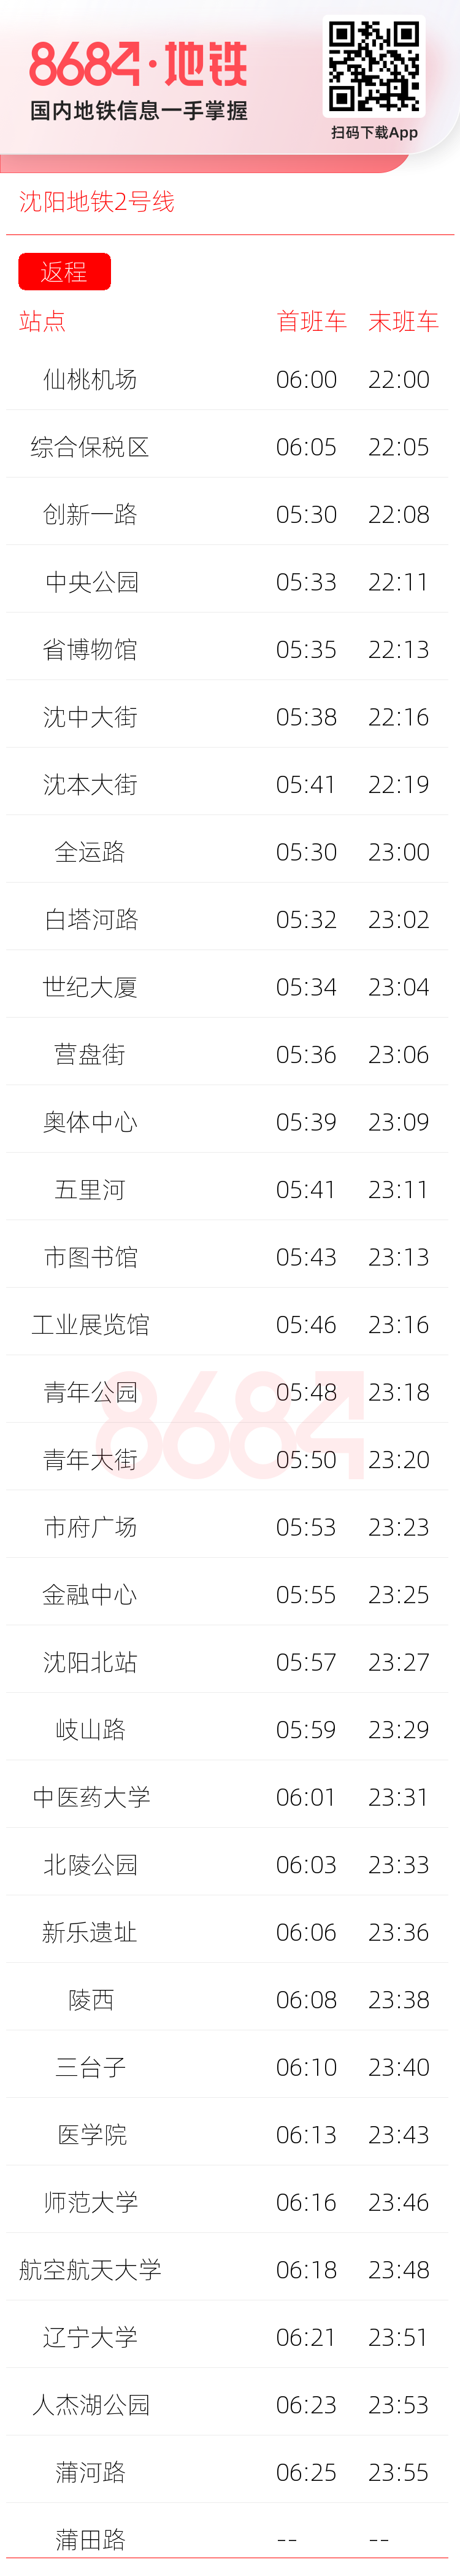 沈阳地铁2号线运营时间表